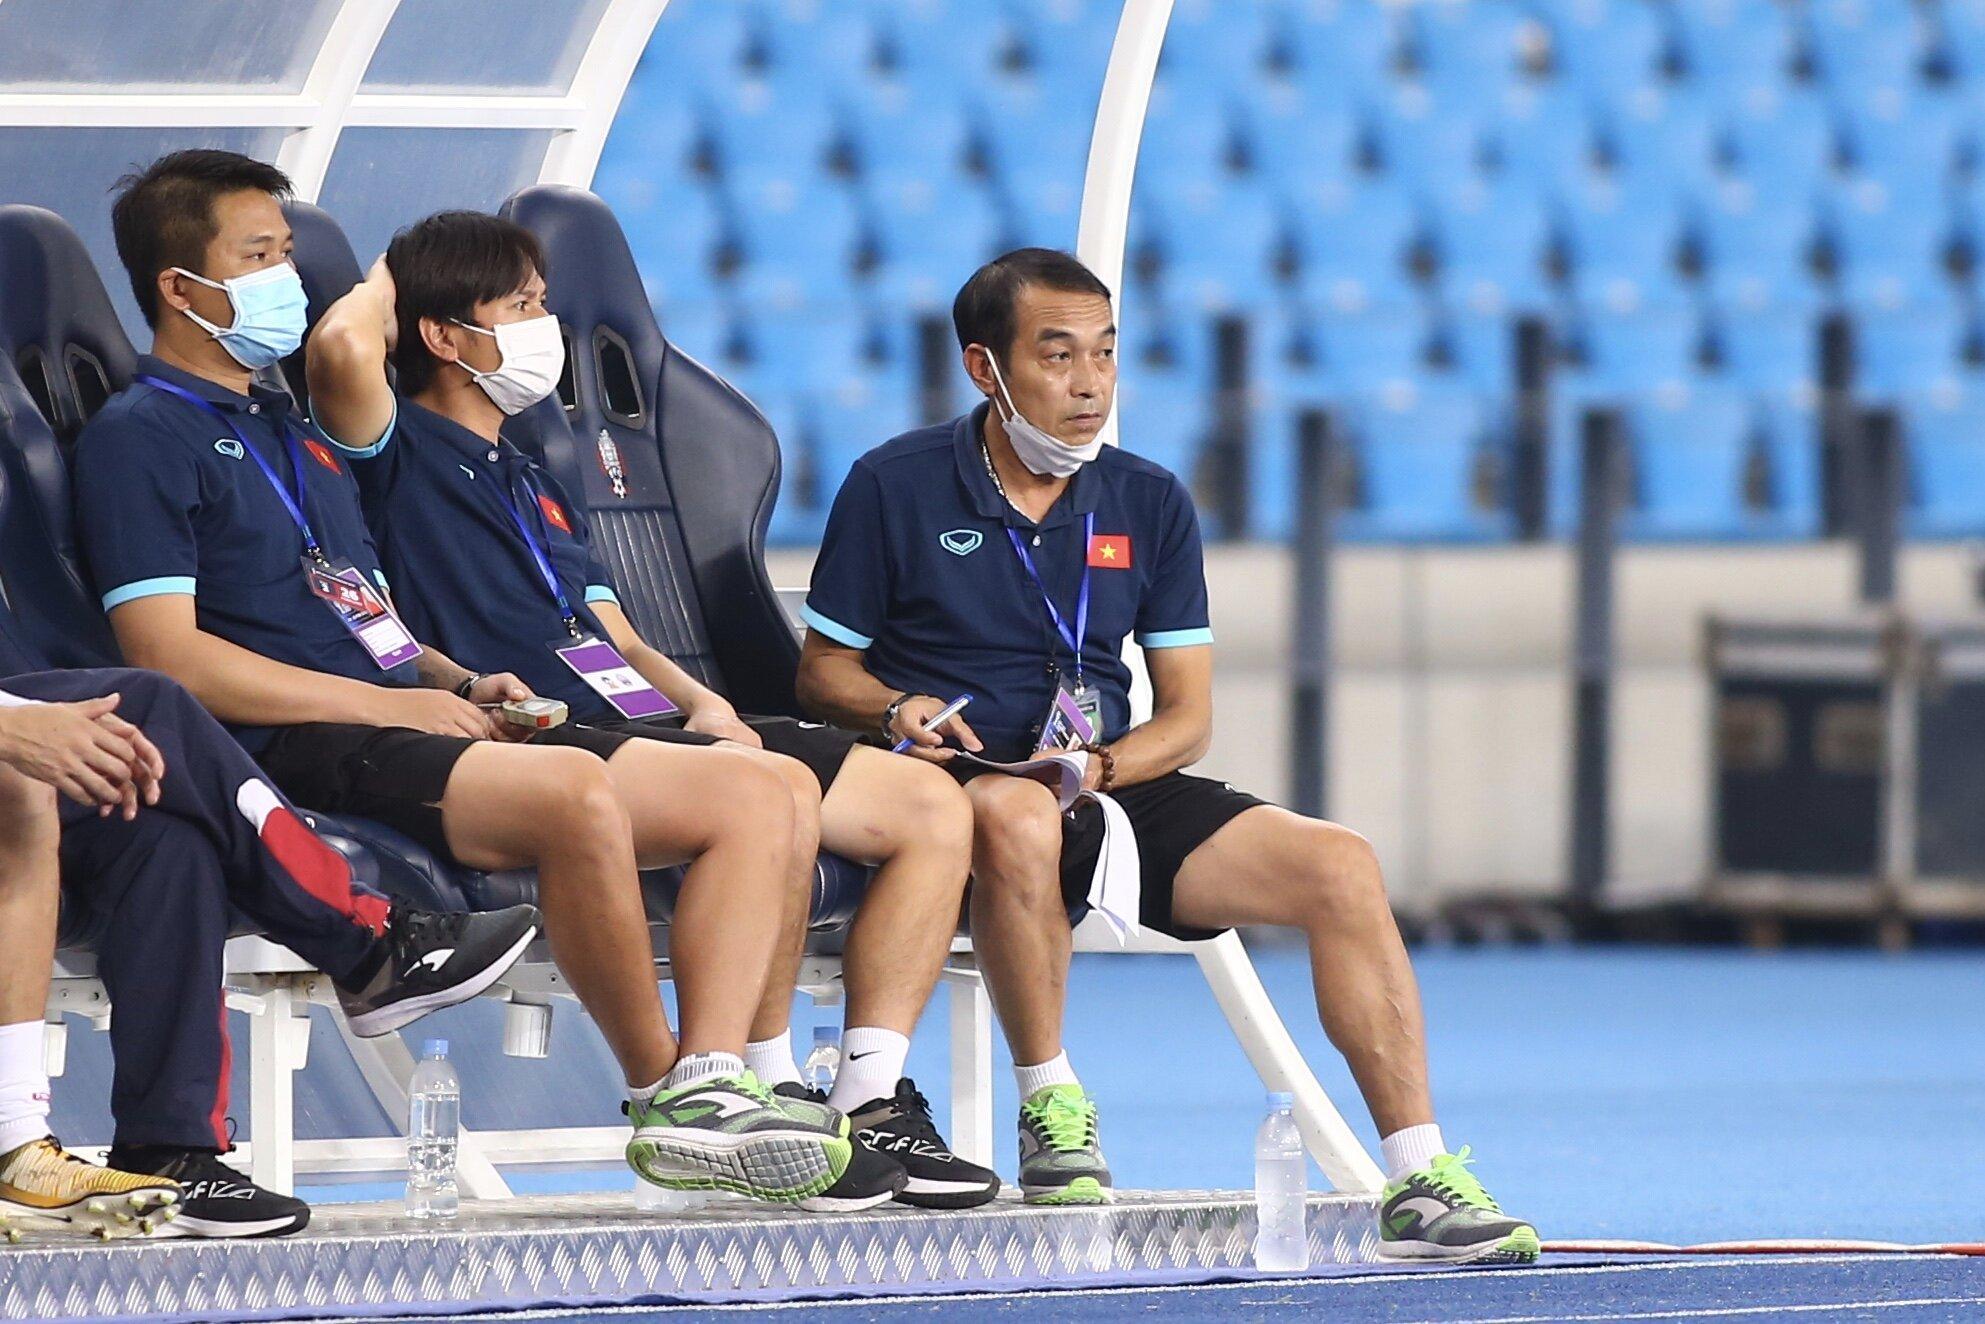 Xen giữa quá trình làm việc tại các Trung tâm đào tạo bóng đá trẻ, ông Nam dẫn dắt một số đội tuyển trẻ. Năm 2016, ông dẫn dắt ĐT U16 Việt Nam vào tới tứ kết giải U16 châu Á. (Ảnh: Internet)